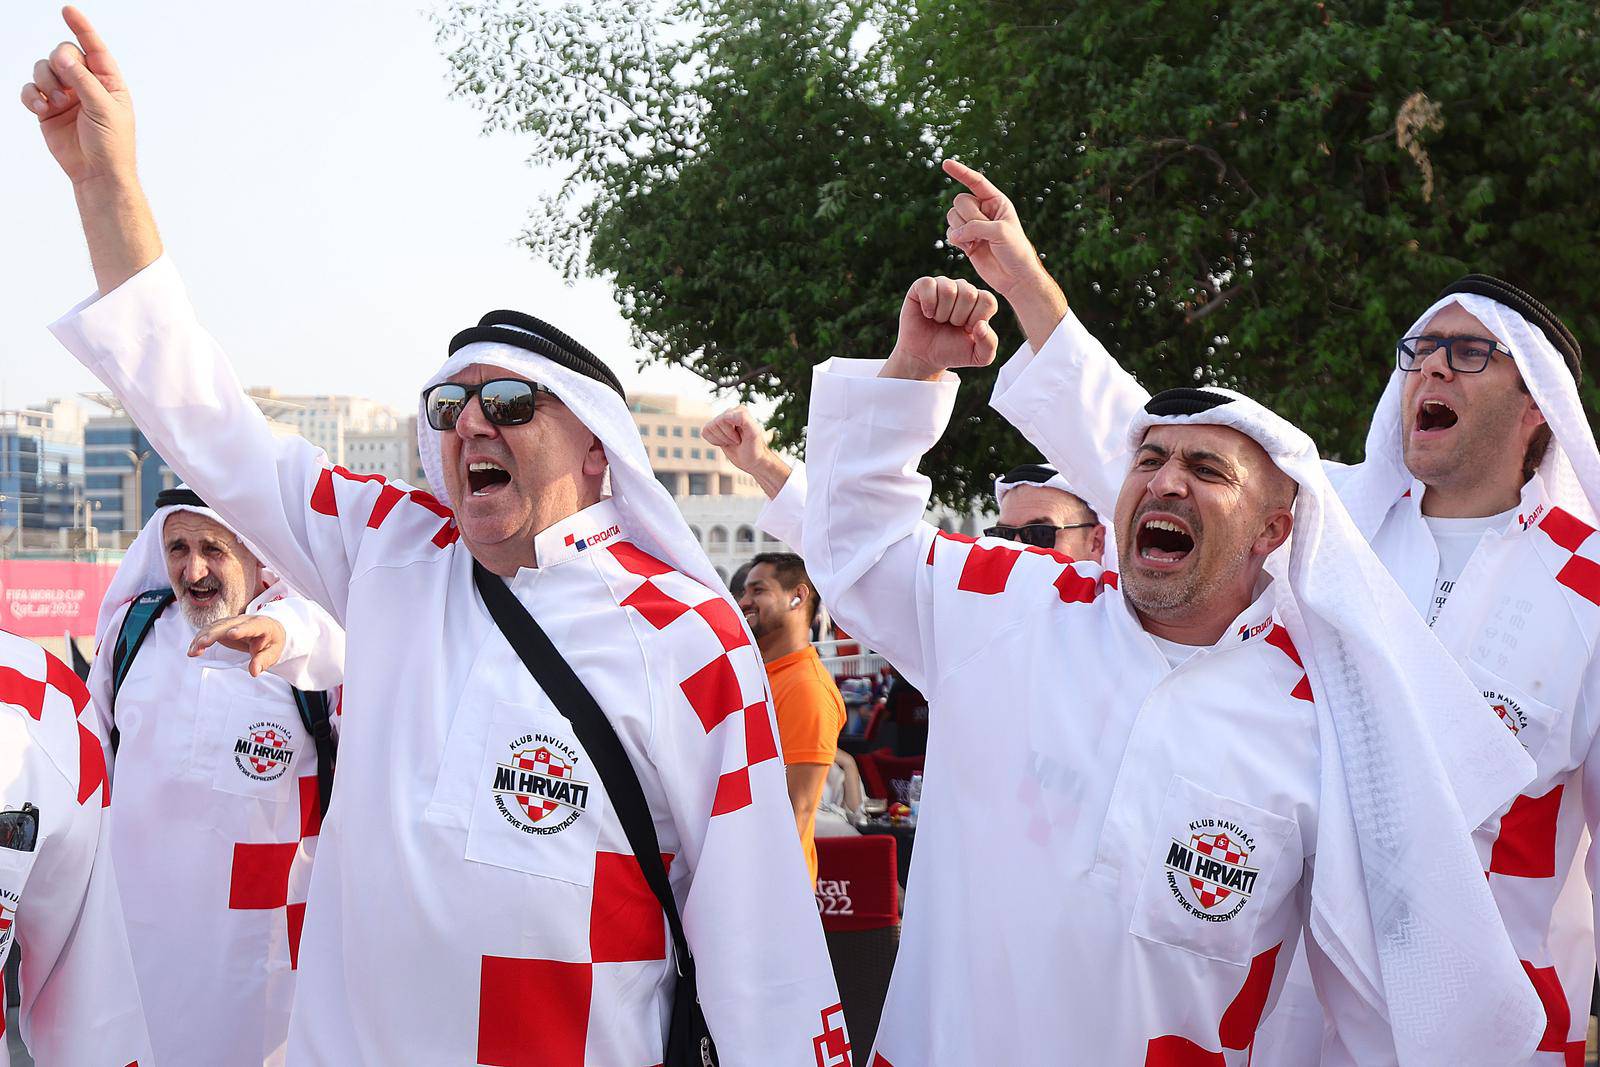 Hrvatski navija?i u tradicionalnim katarskim narodnim nošnjama zabavljaju se u centru Dohe 